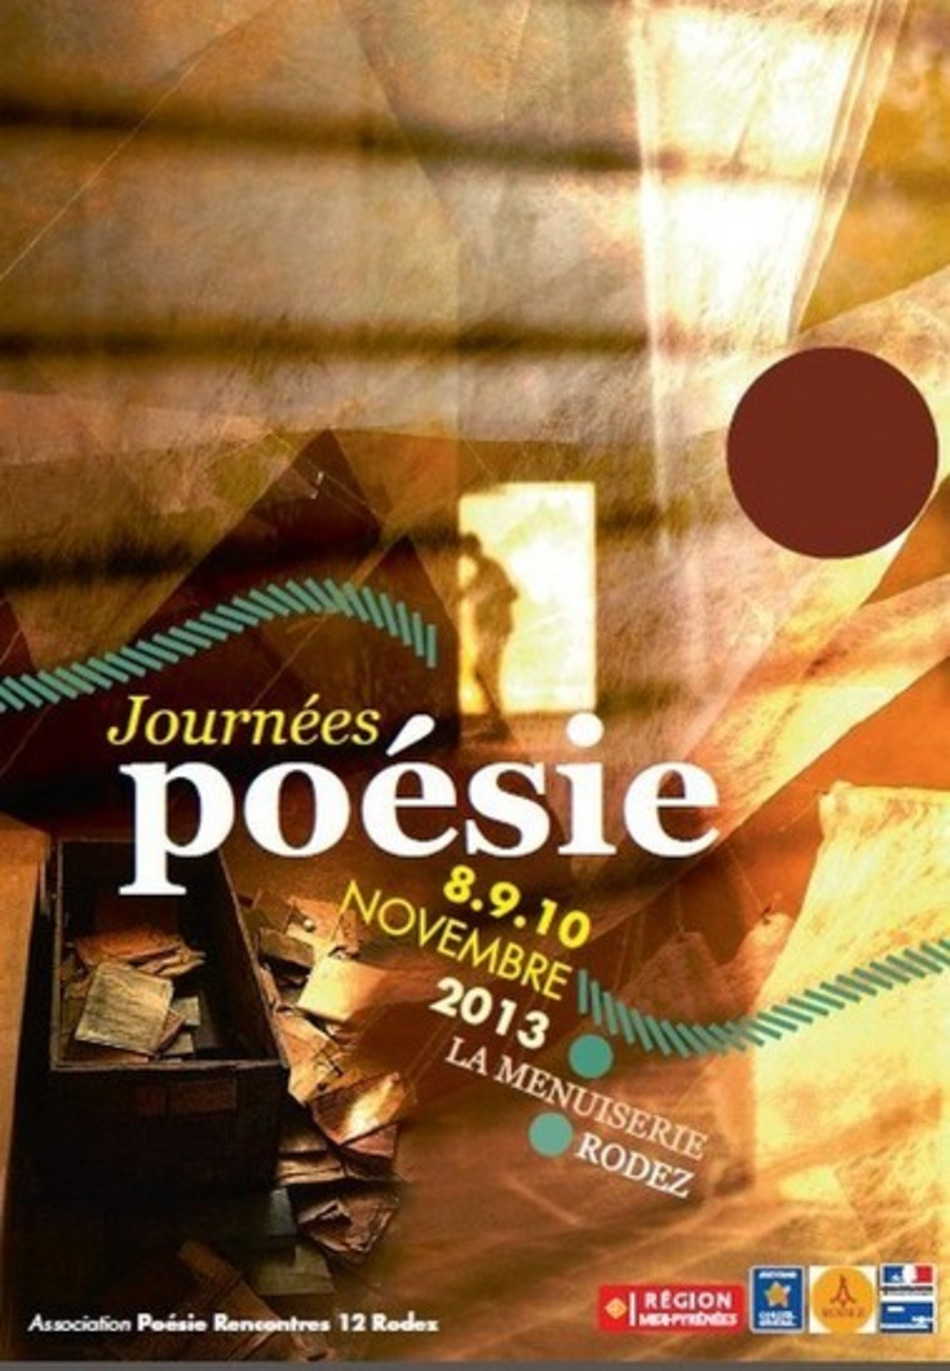 [agenda] Les Journées Poésie 2013 de Rodez, les 8, 9 et 10 novembre 2013 | Poezibao | Scoop.it